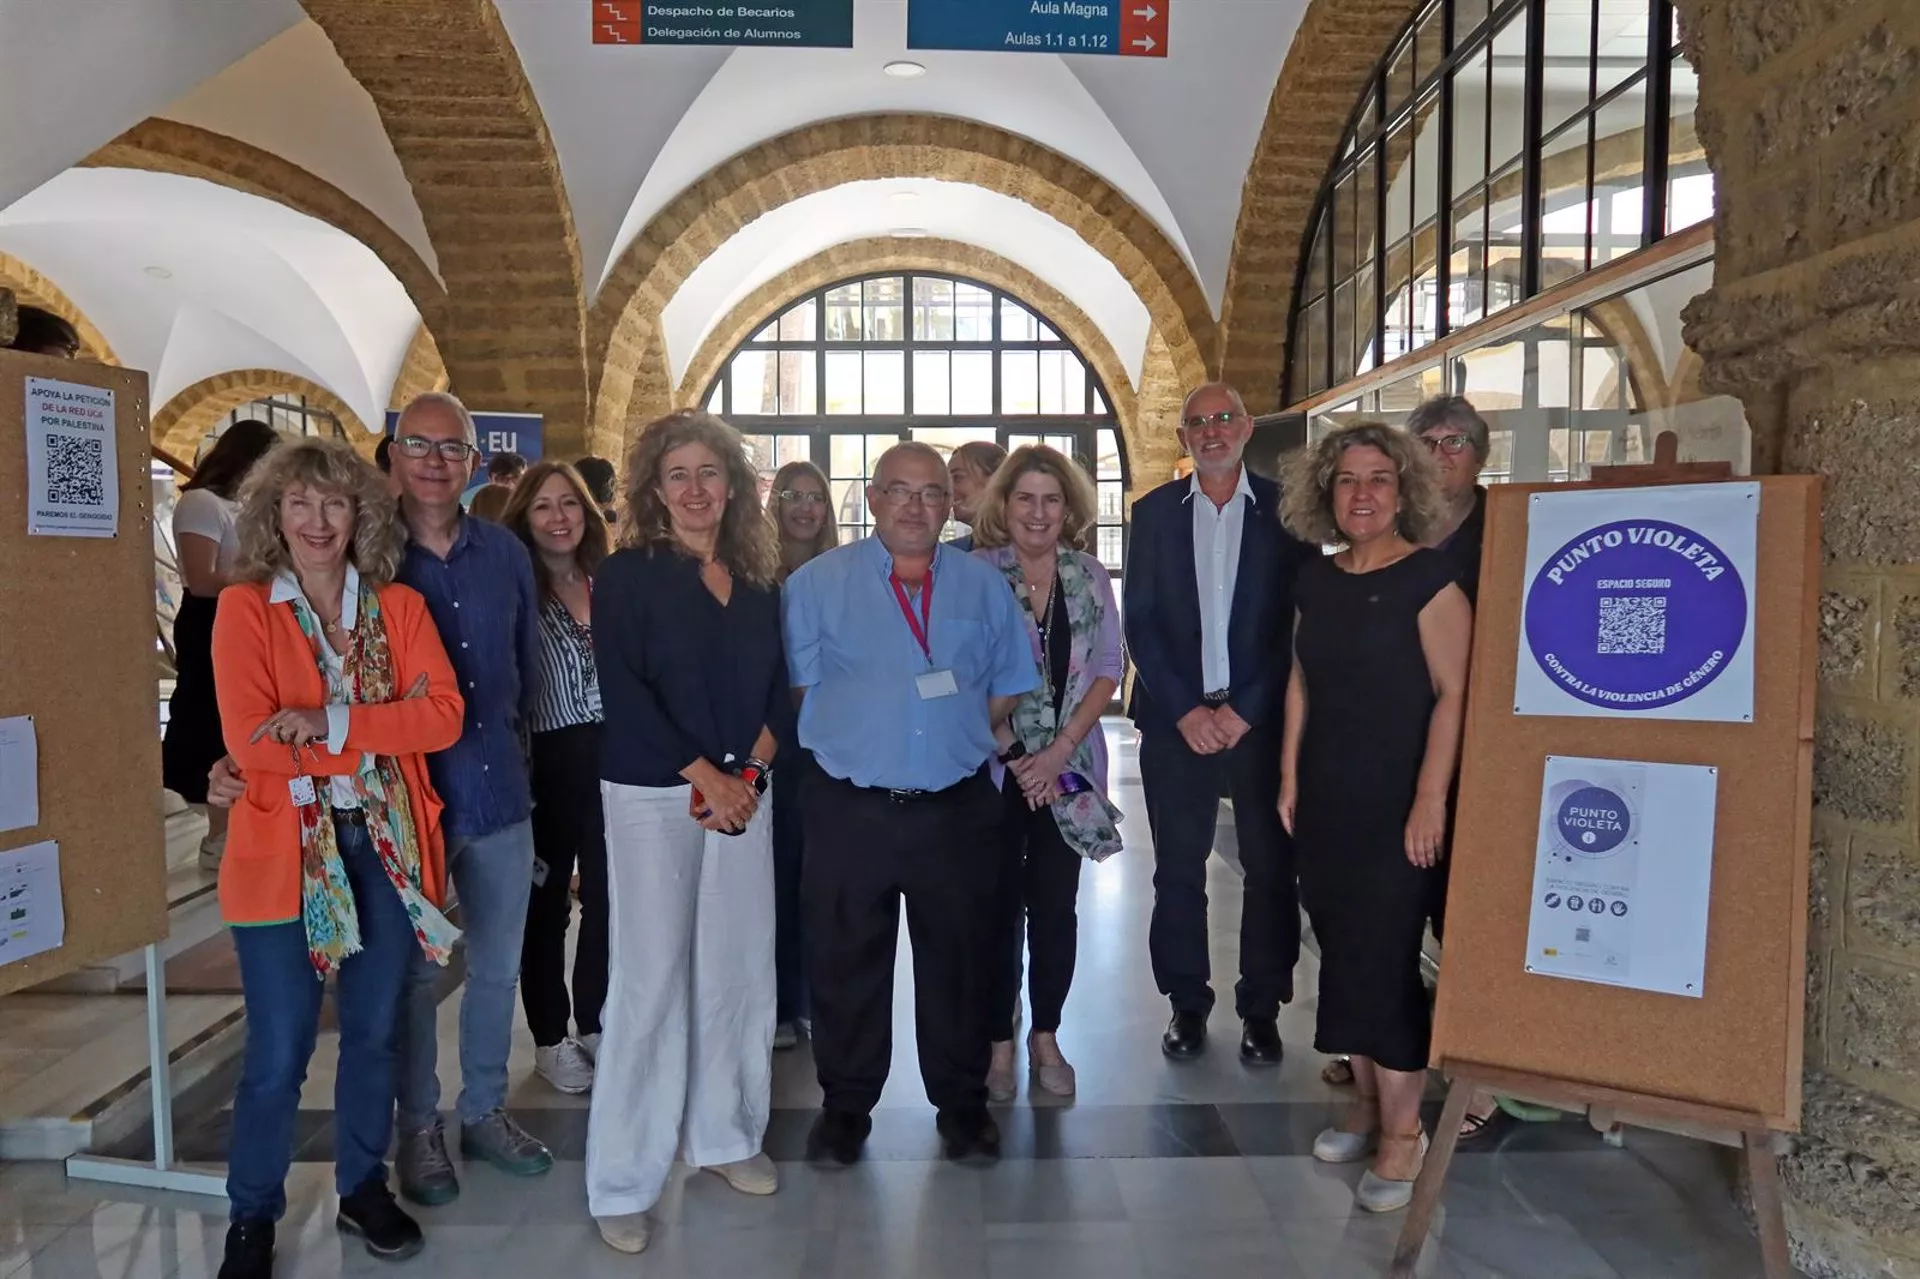 Inauguración del punto violeta en la Facultad de Filosofía y Letras de Cádiz